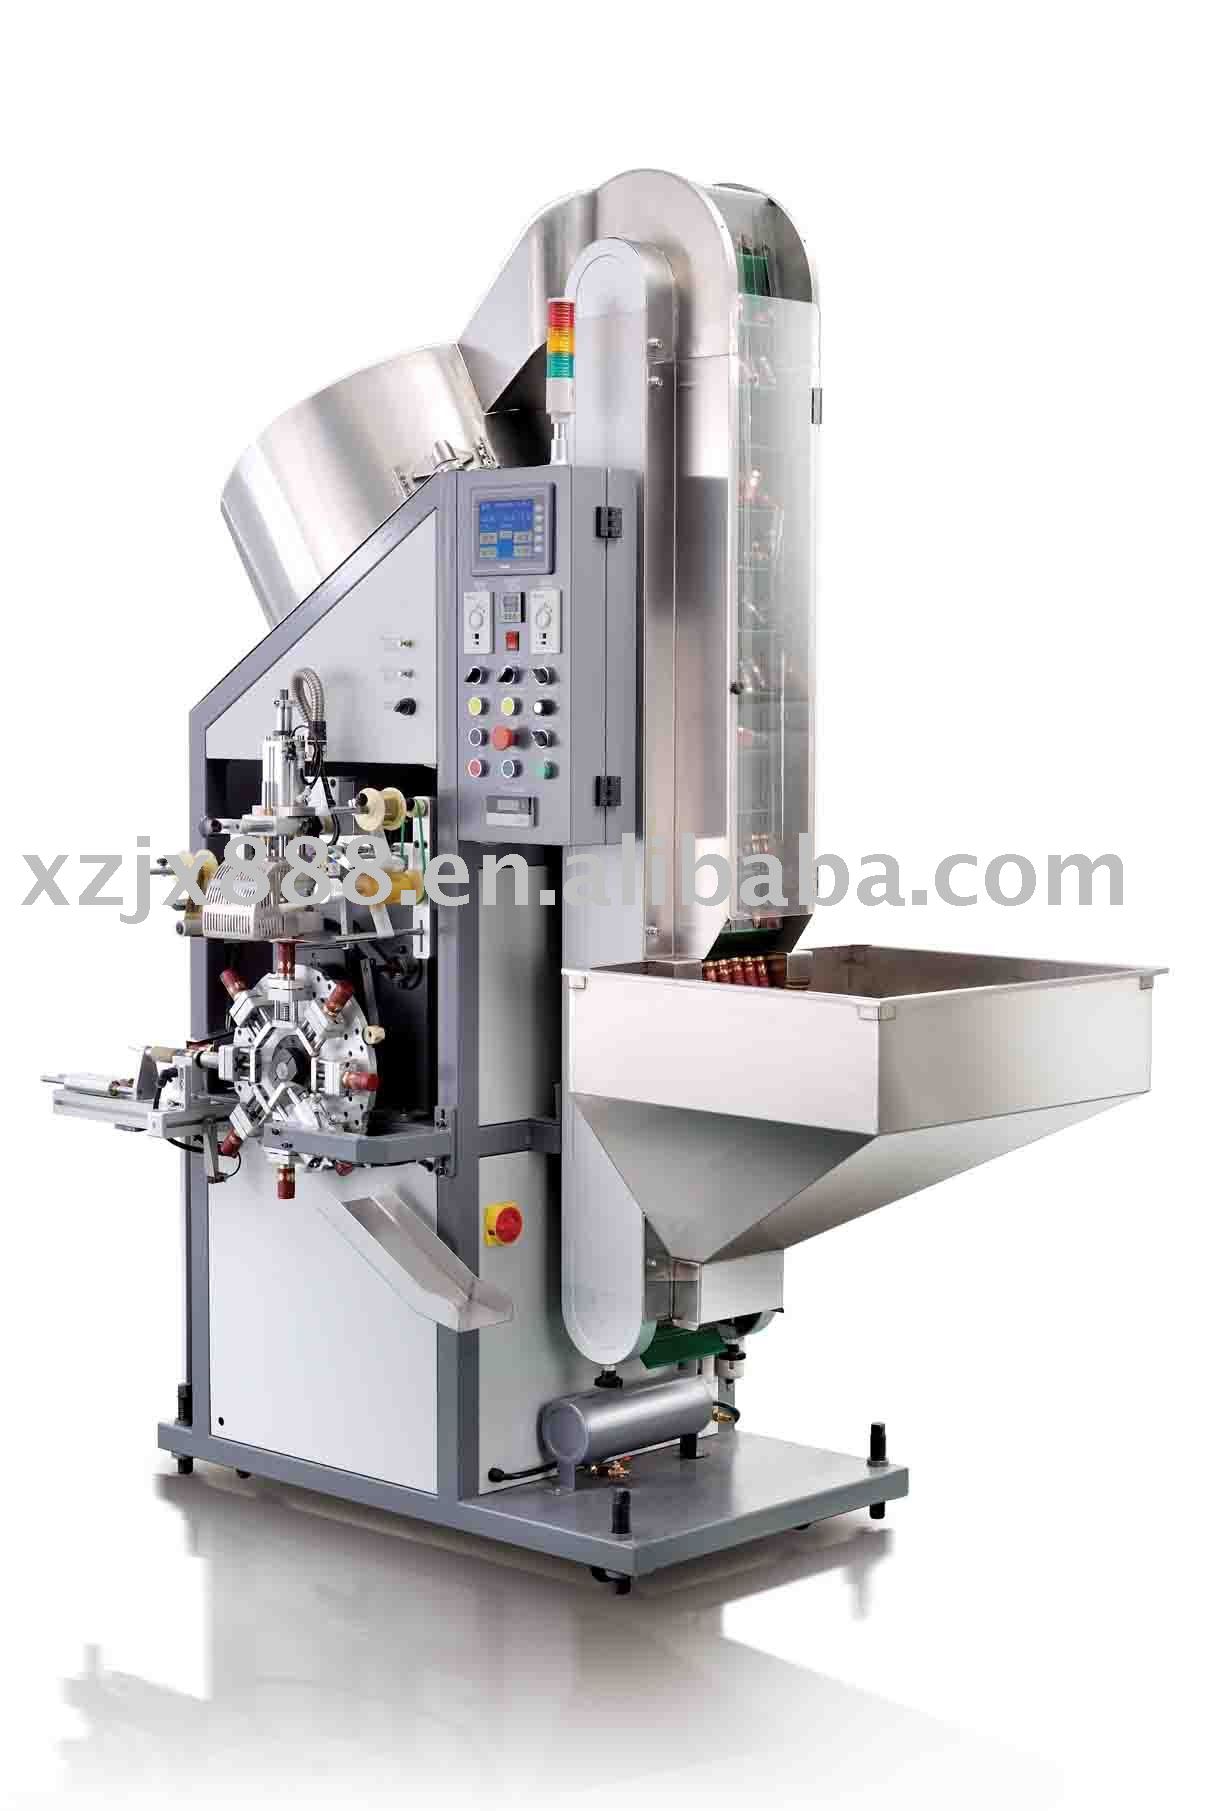 TAR-01-B Automatic hot stamping machine (flat printing machine)